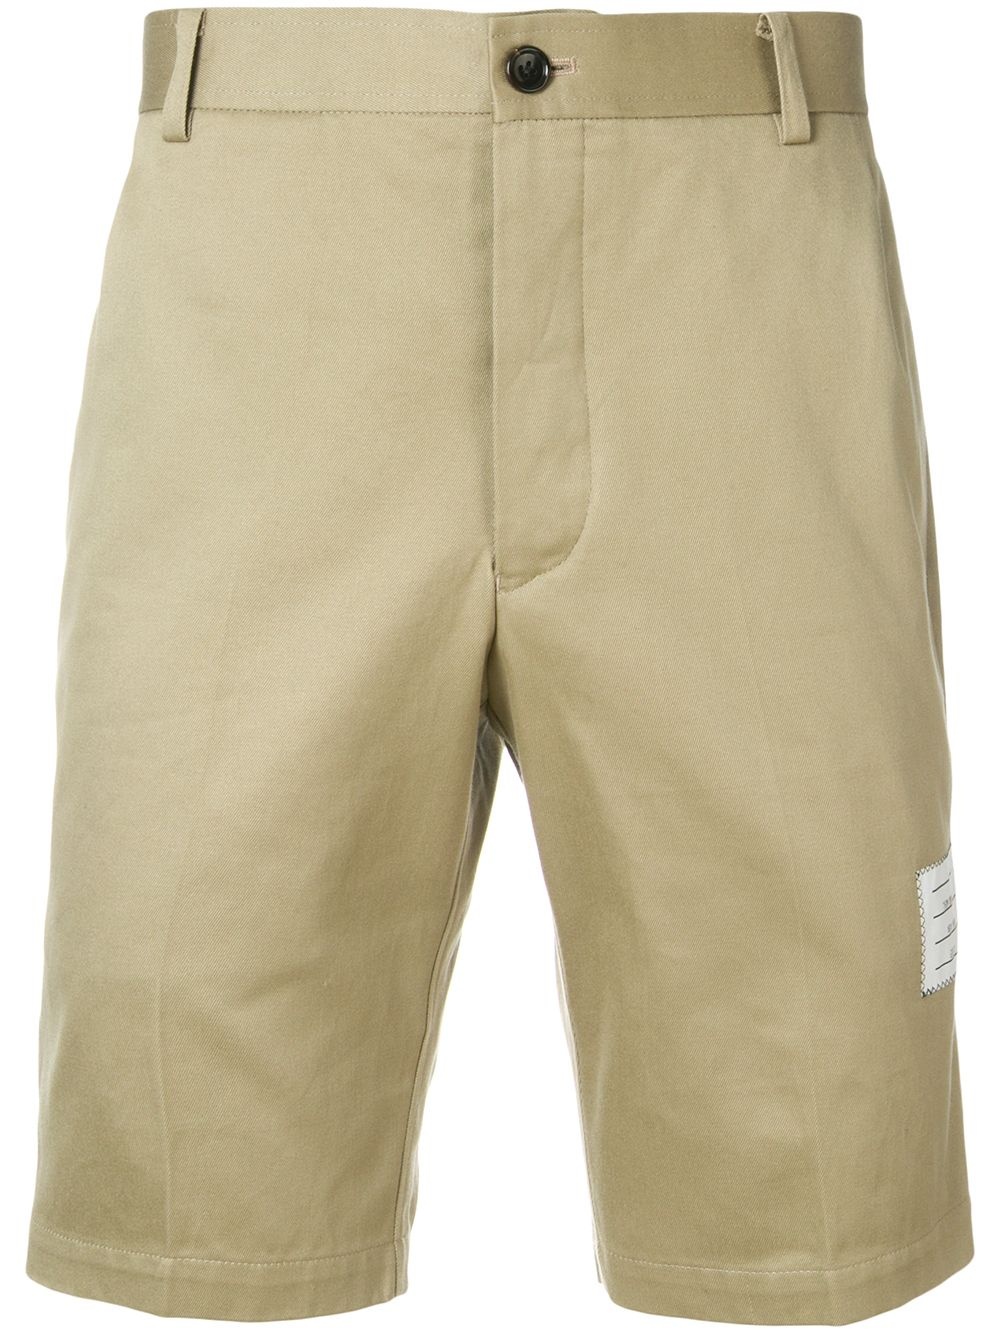 Cotton Twill Chino Shorts - 1